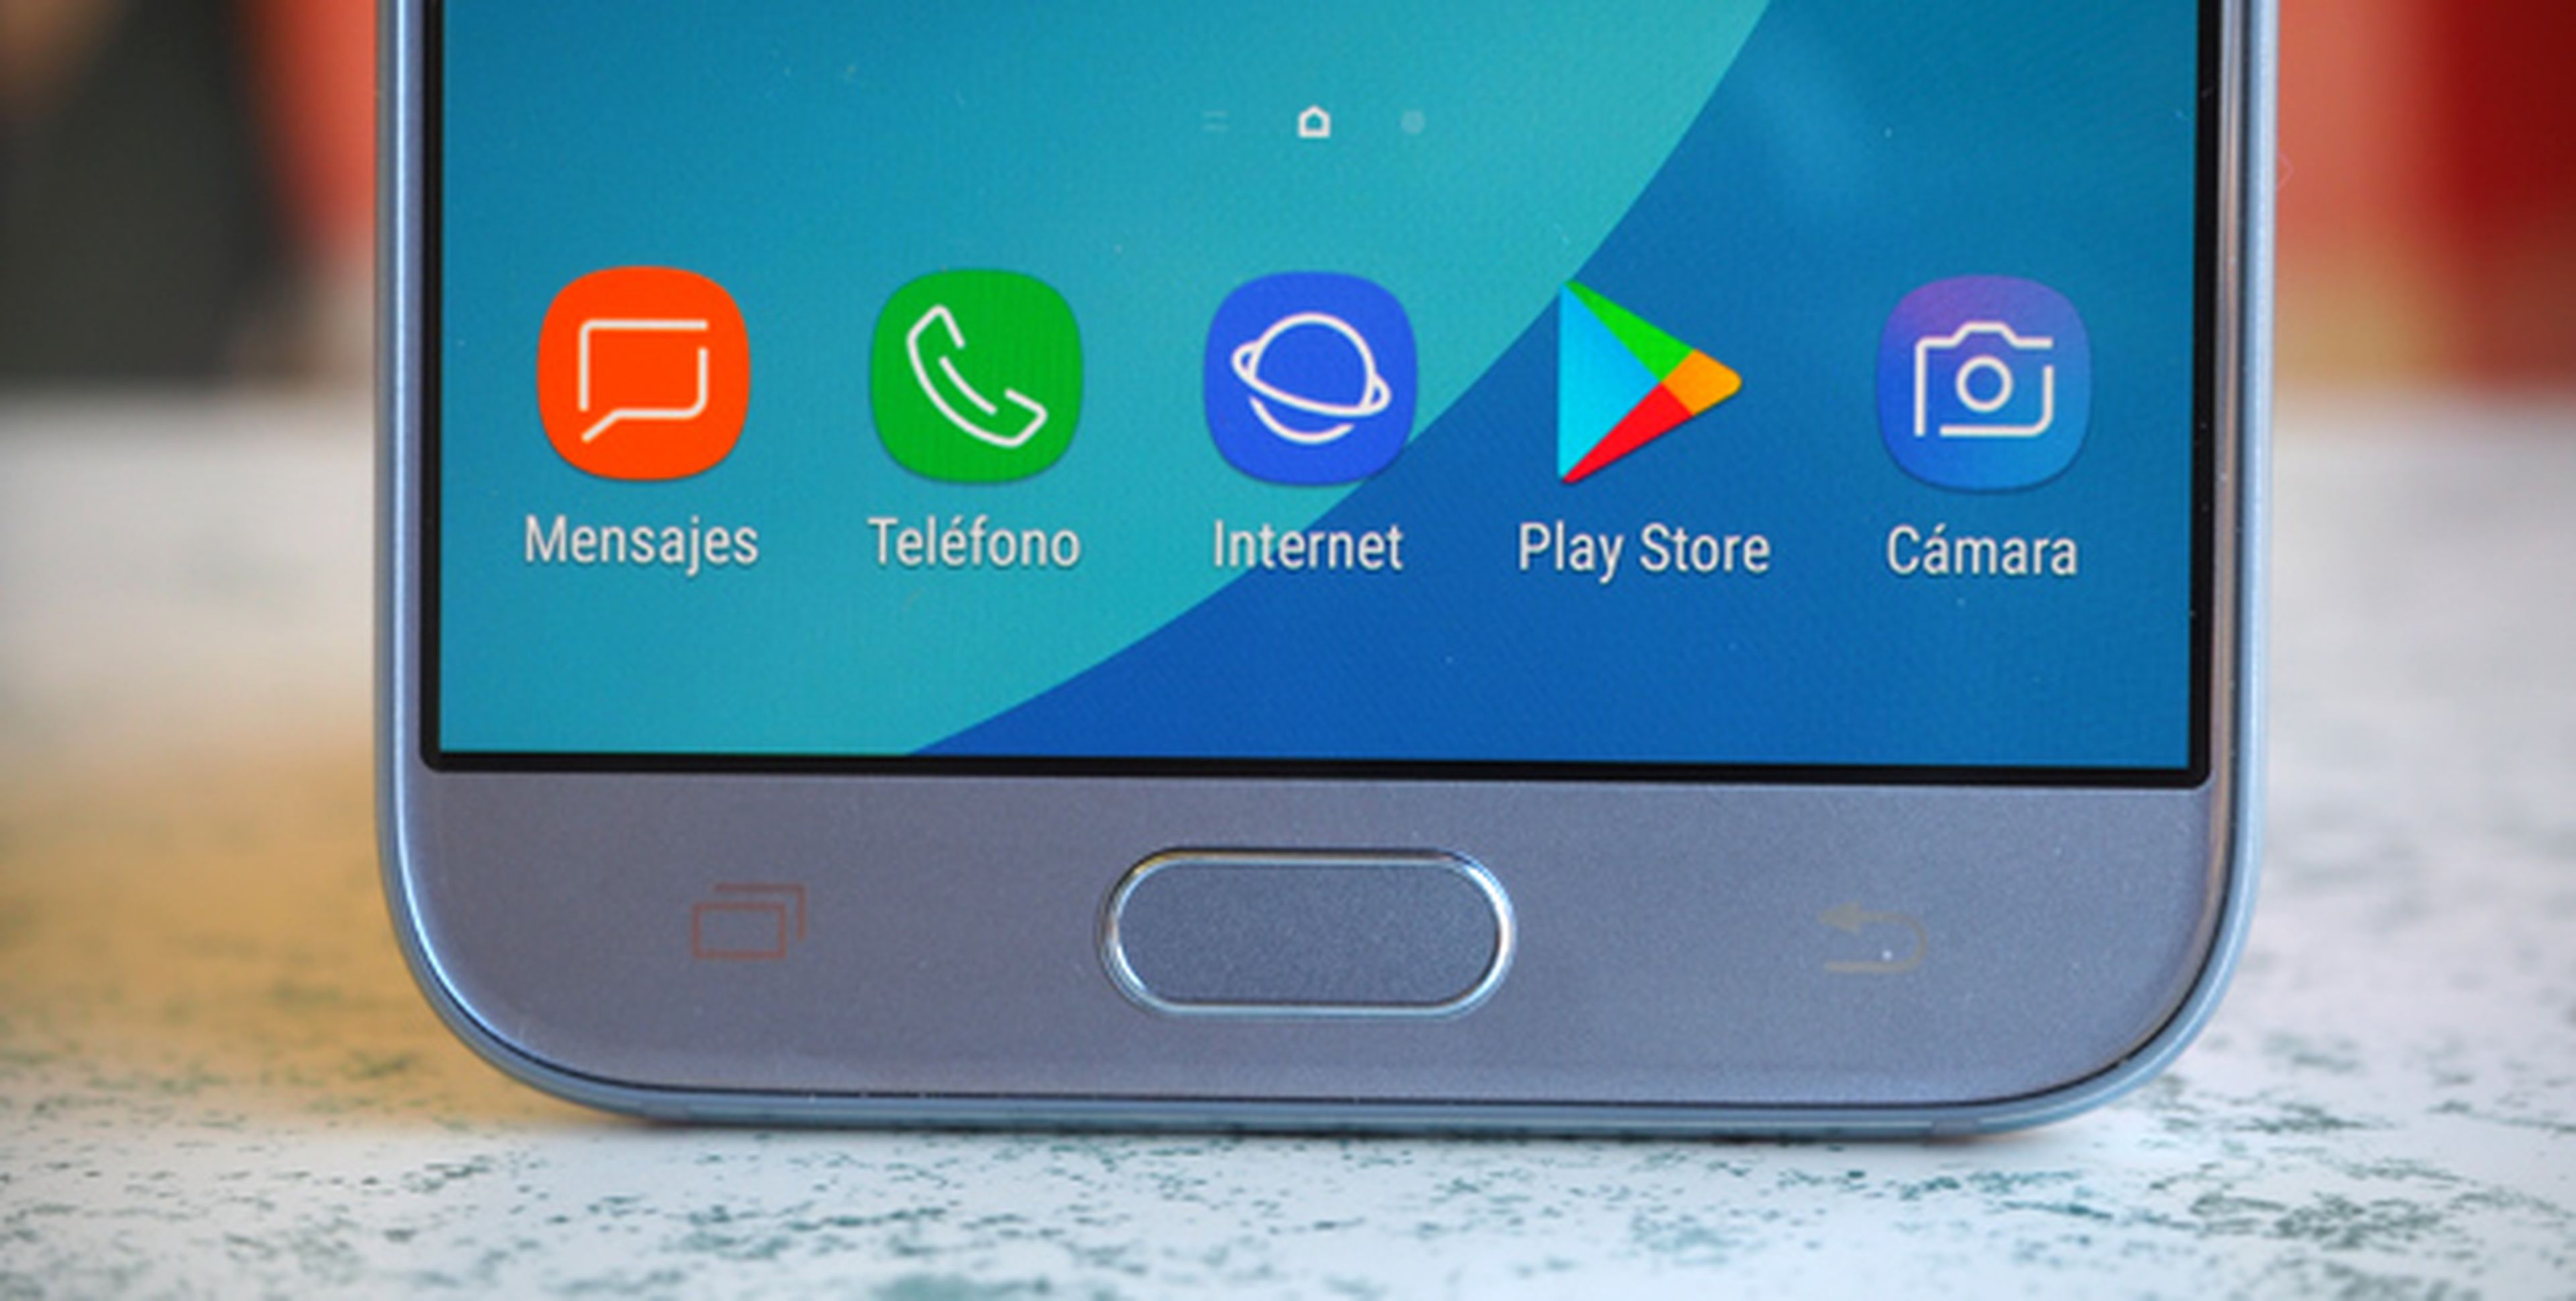 Samsung Galaxy J7 2017: Cómo mostrar el botón de aplicaciones